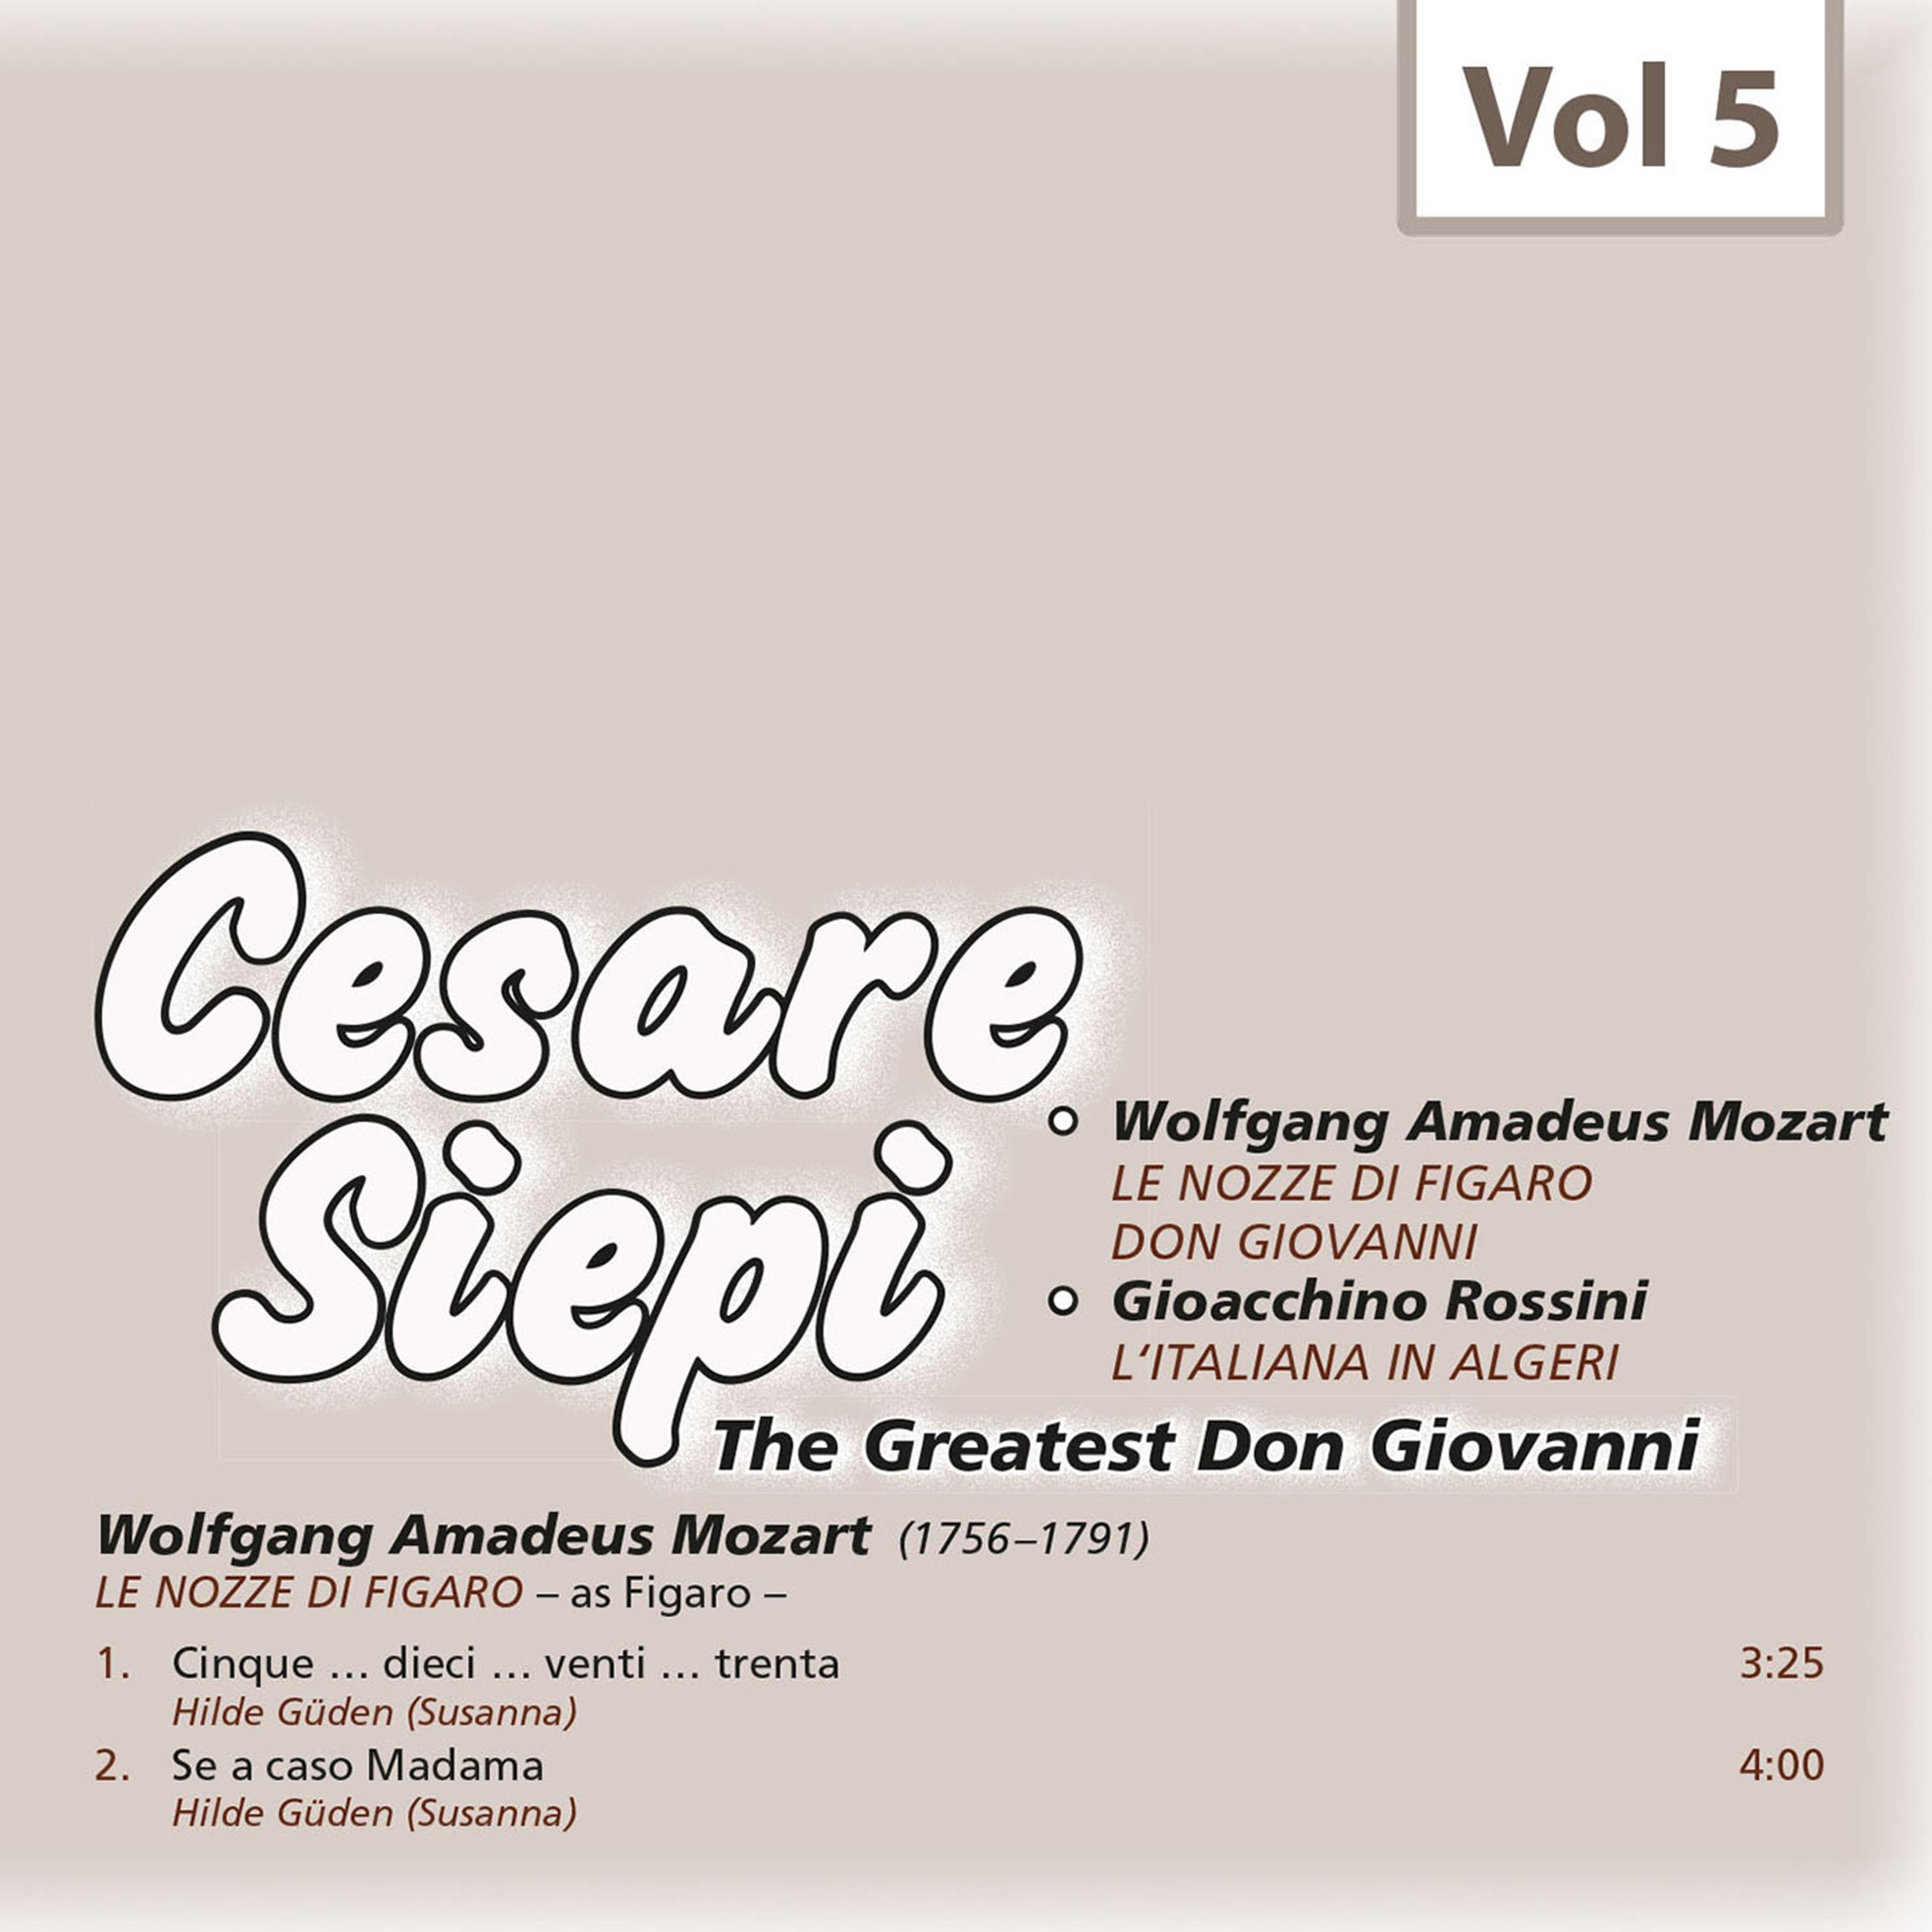 Cesare Siepi - The Greatest Don Giovanni, Vol. 5